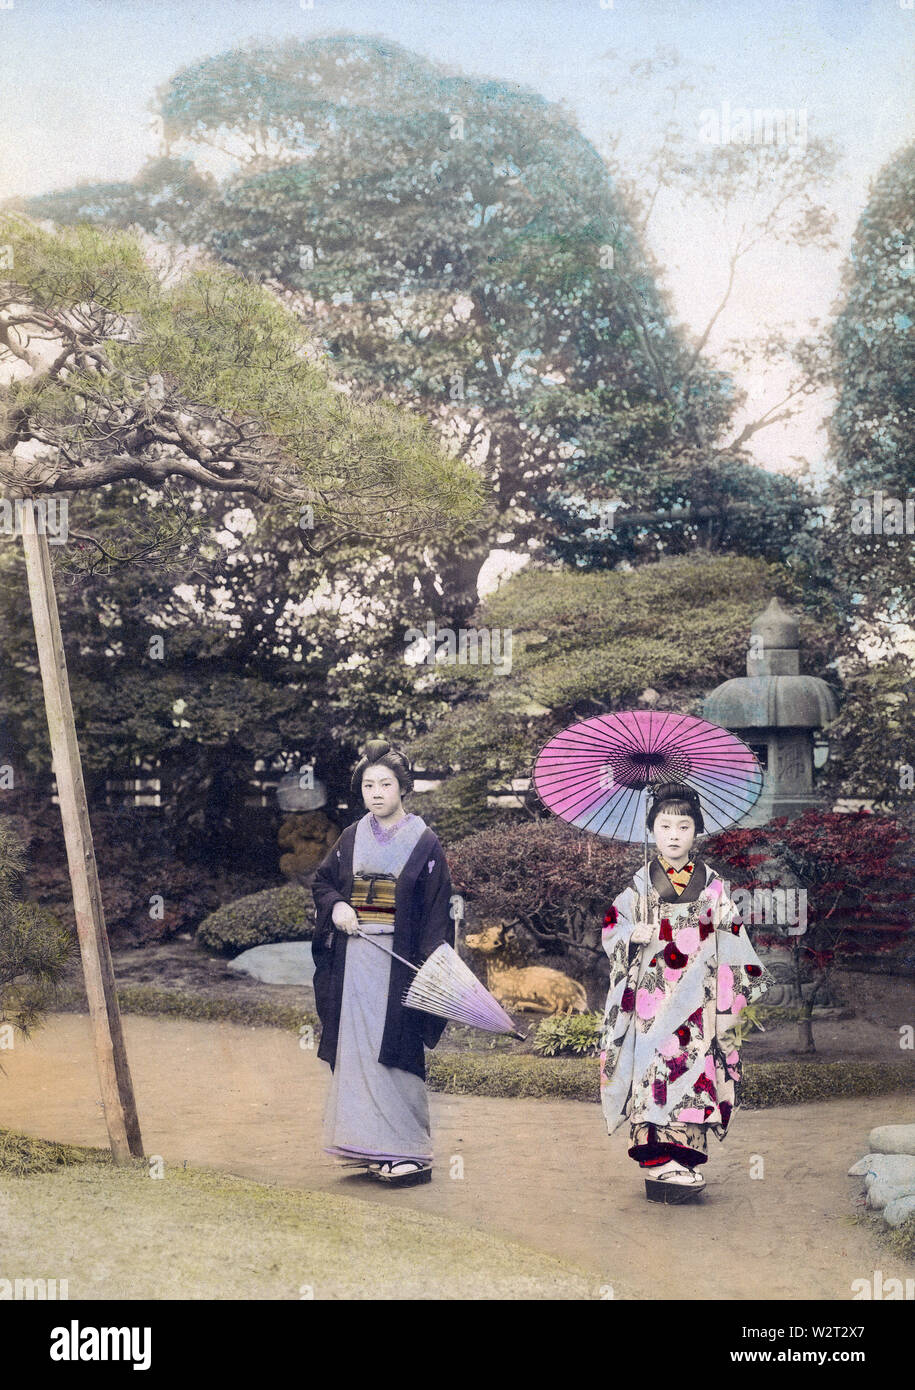 [1890s Japan - Japanische Frauen mit Sonnenschirmen] - zwei Frauen im Kimono holding Sonnenschirme in einem Japanischen Garten dar. In der Rückseite ein Stein Laterne gesehen werden kann. 19 Vintage albumen Foto. Stockfoto